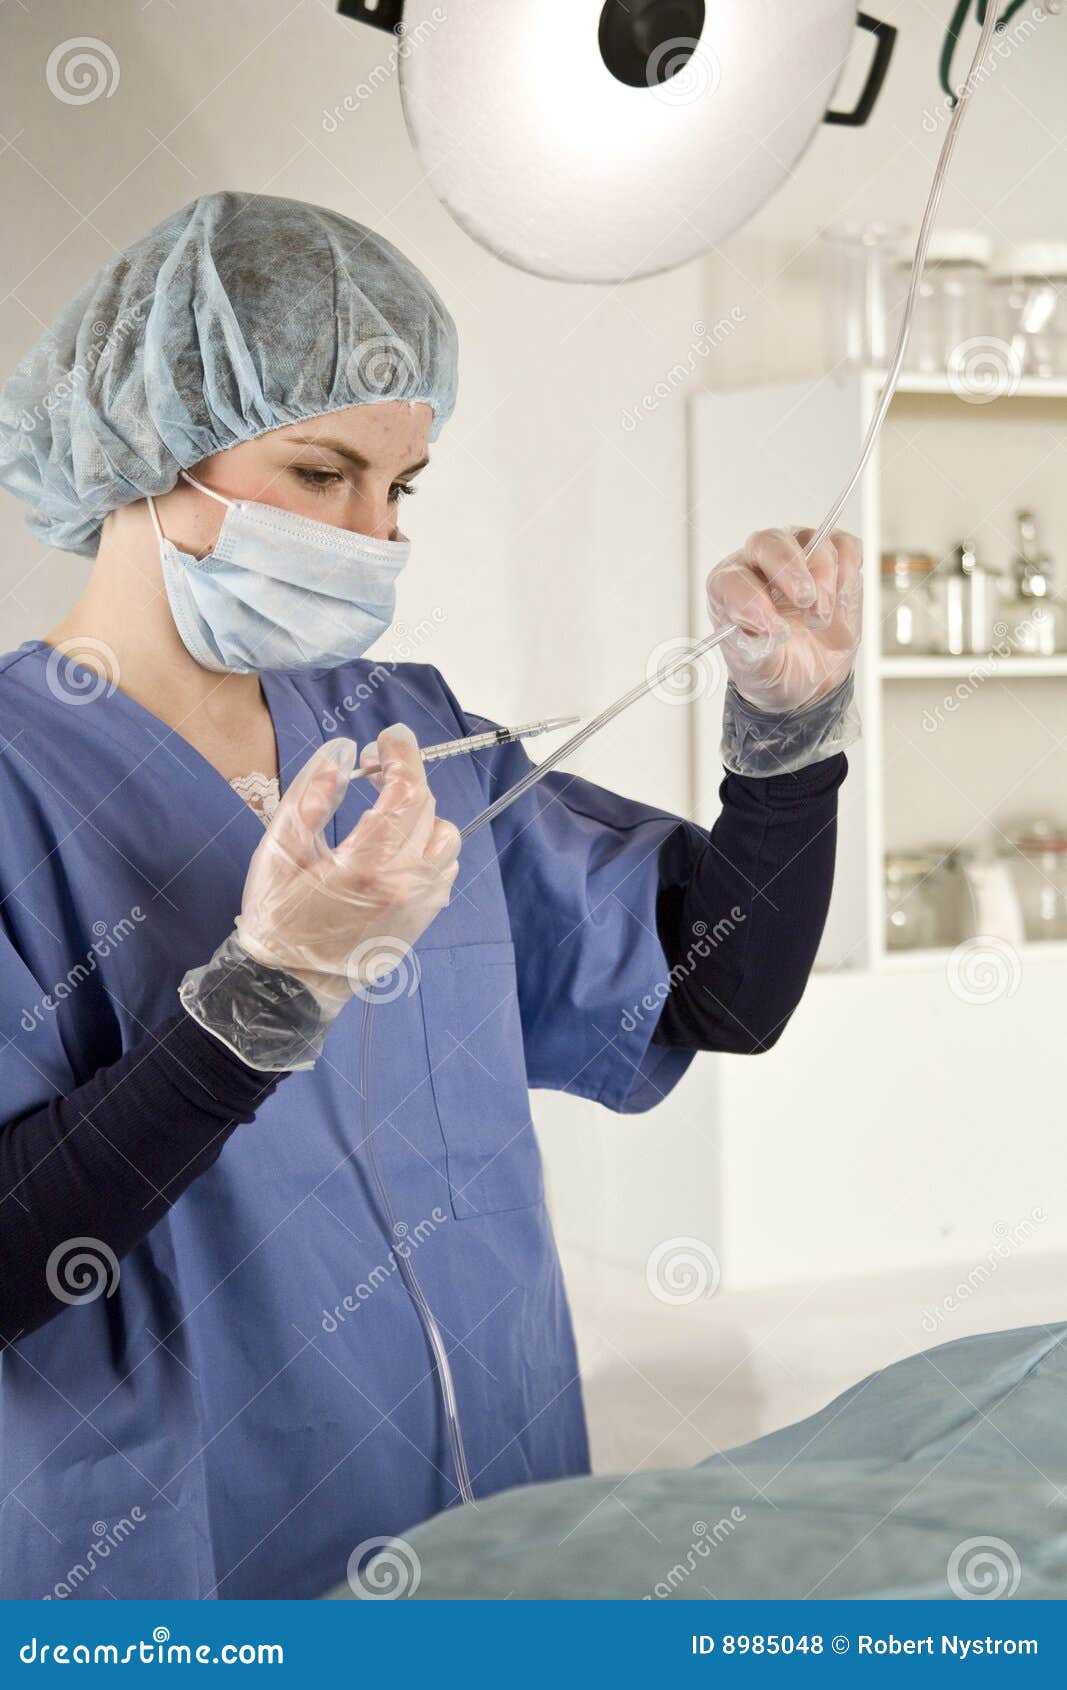 nurse injecting with syringe into iv tube